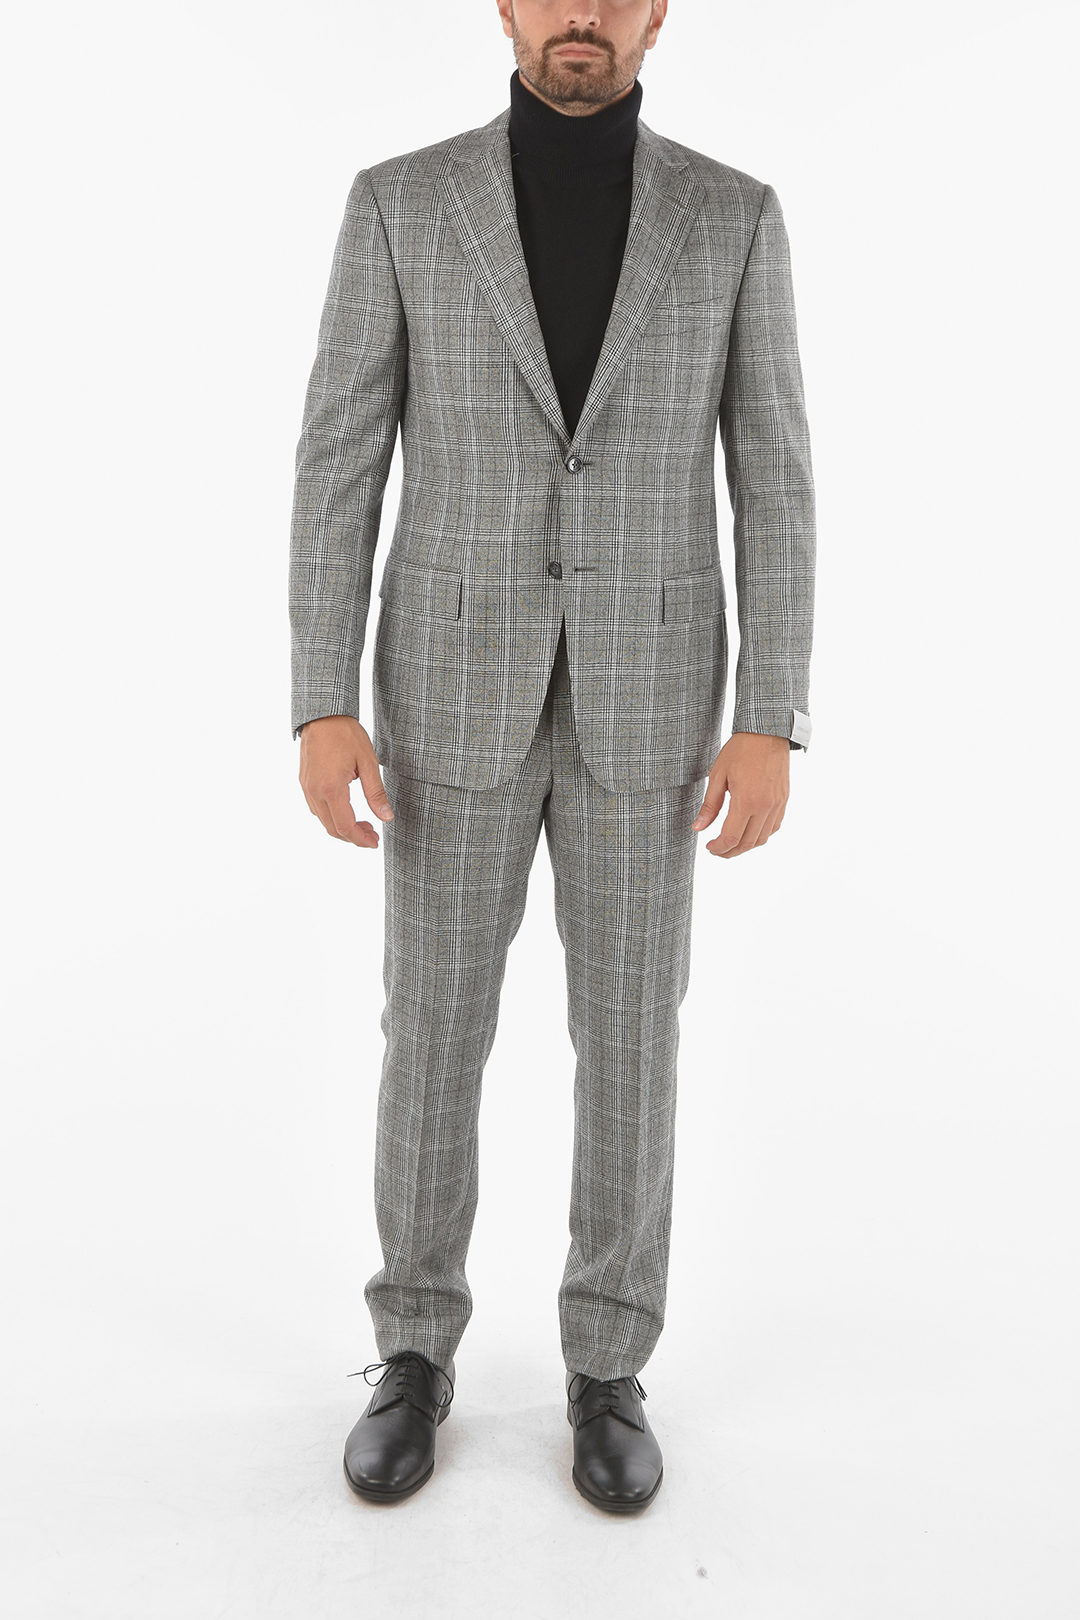 Corneliani district check MANTUA notch lapel 2-button suit drop 6R men -  Glamood Outlet